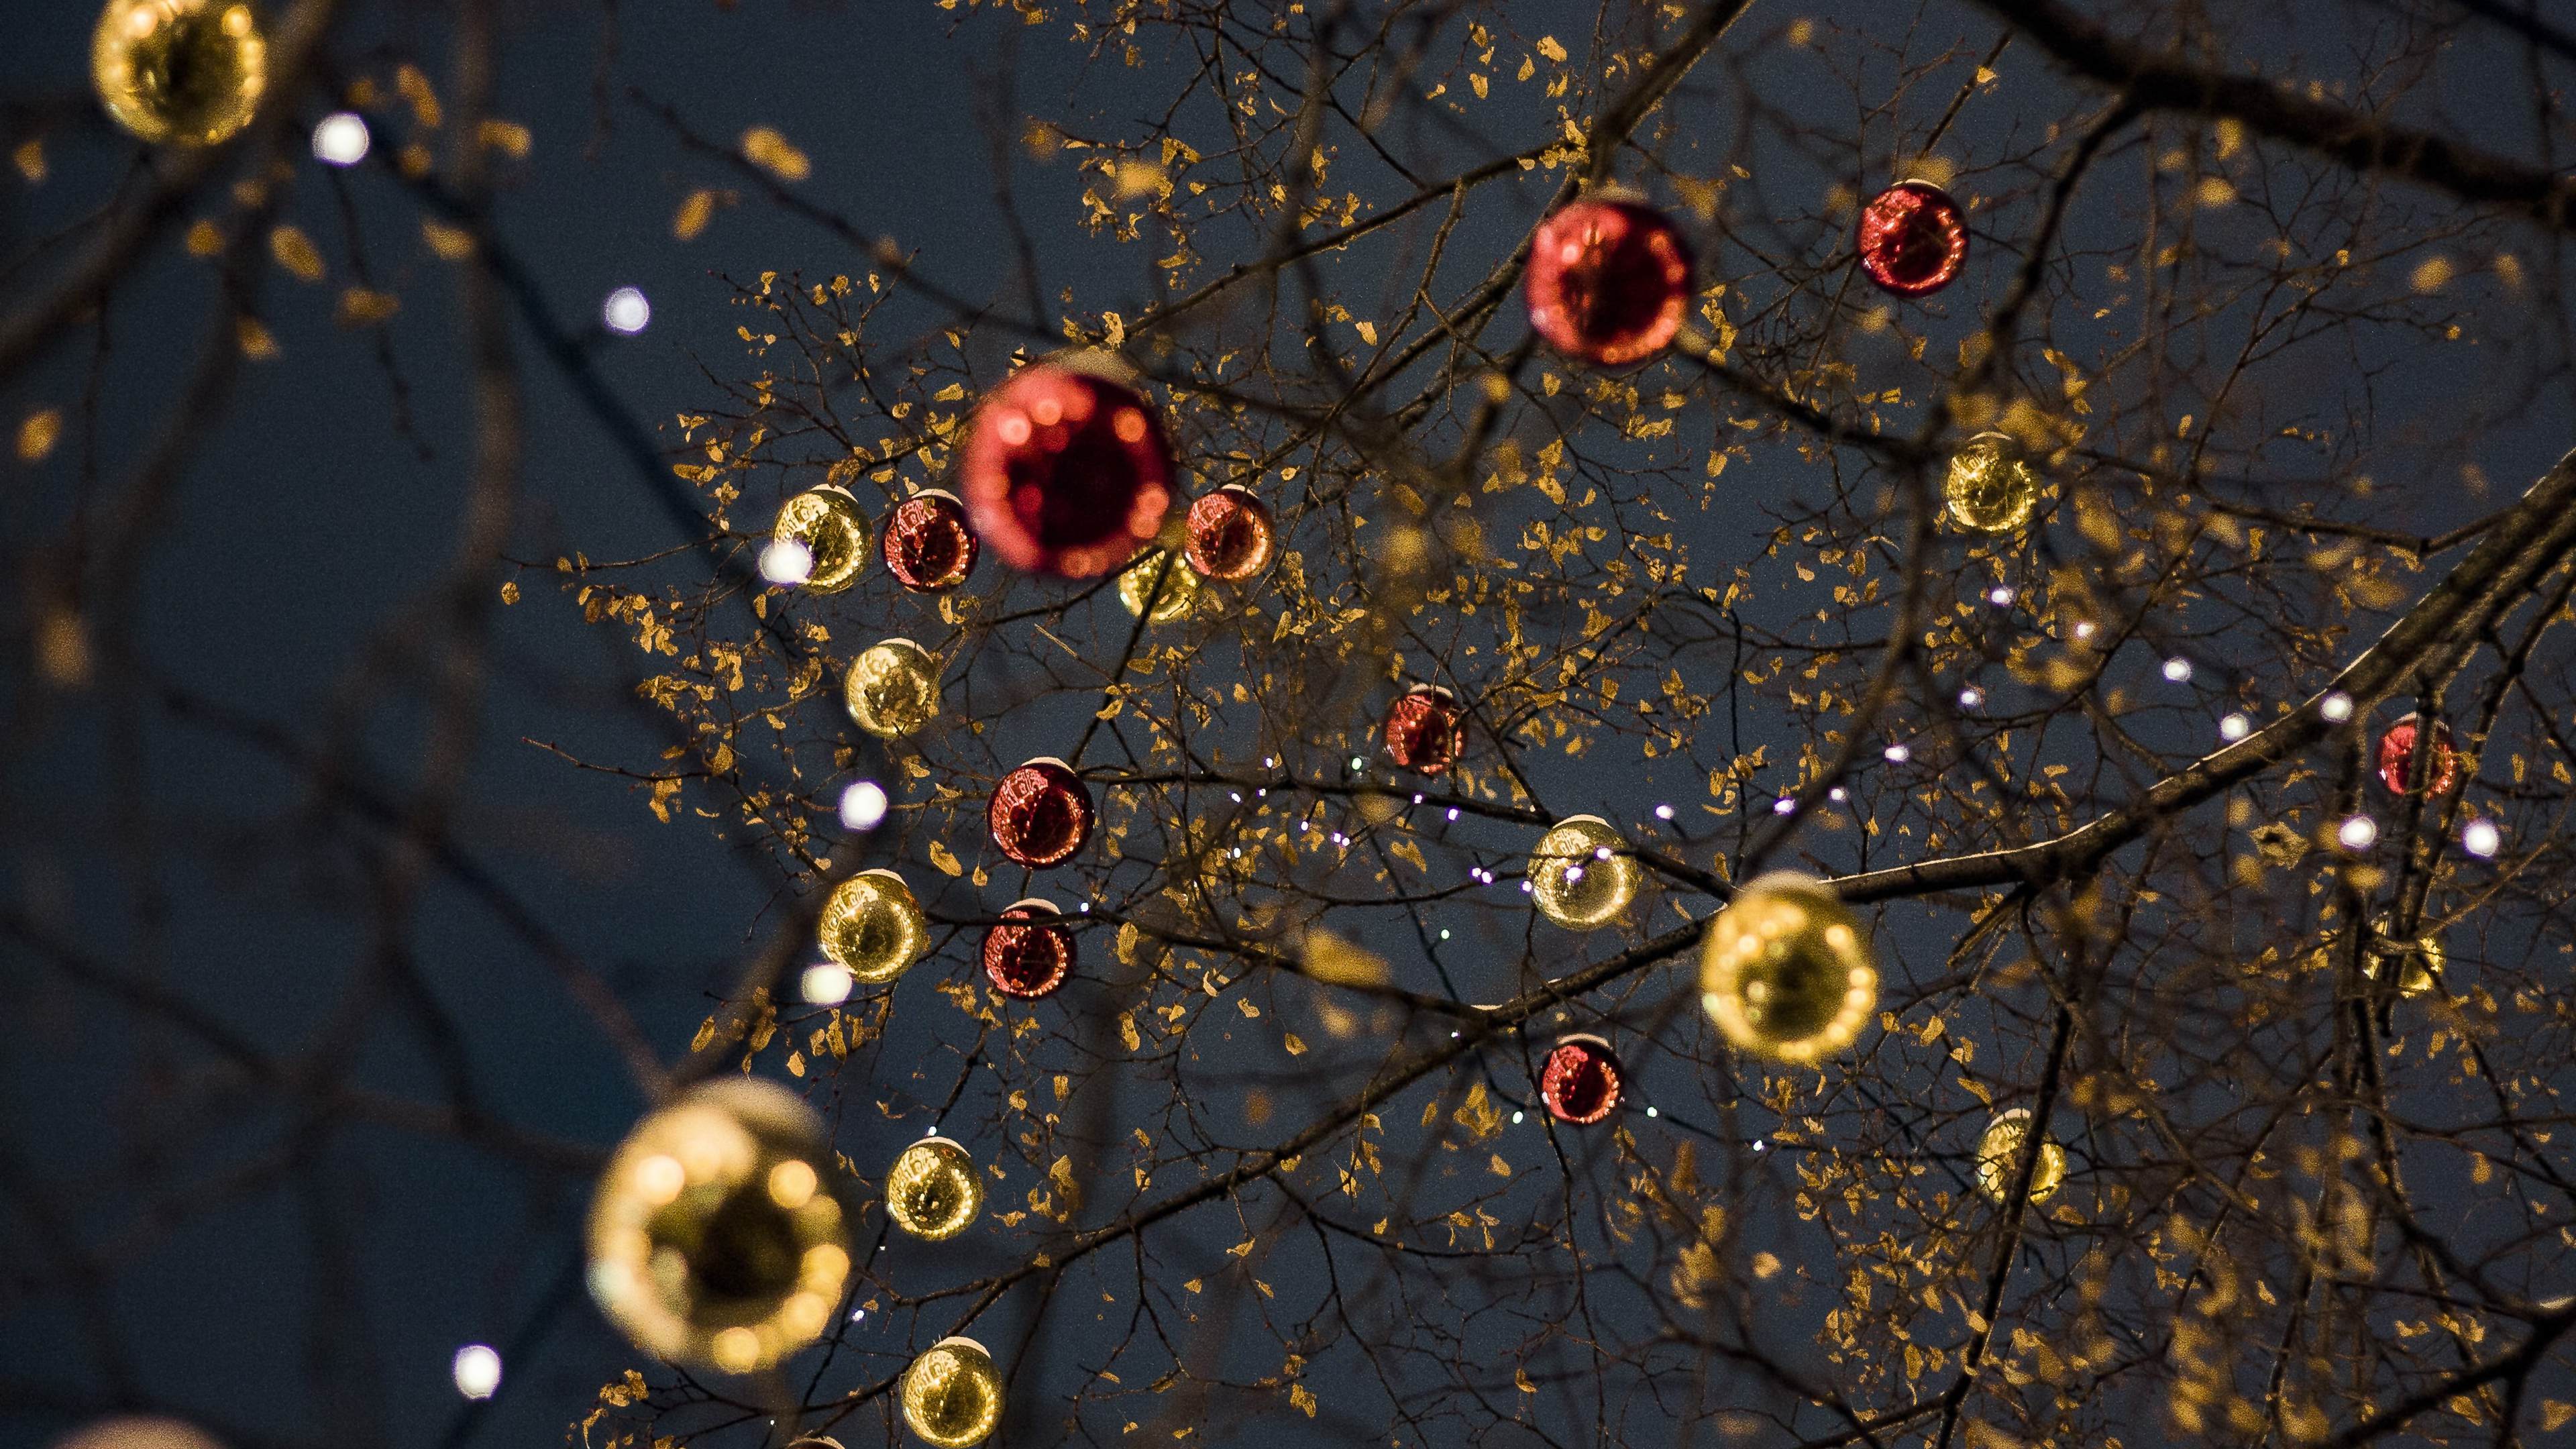 十二月 圣诞节庆典树 灯 球等装饰物唯美壁纸图片 烘托气氛的